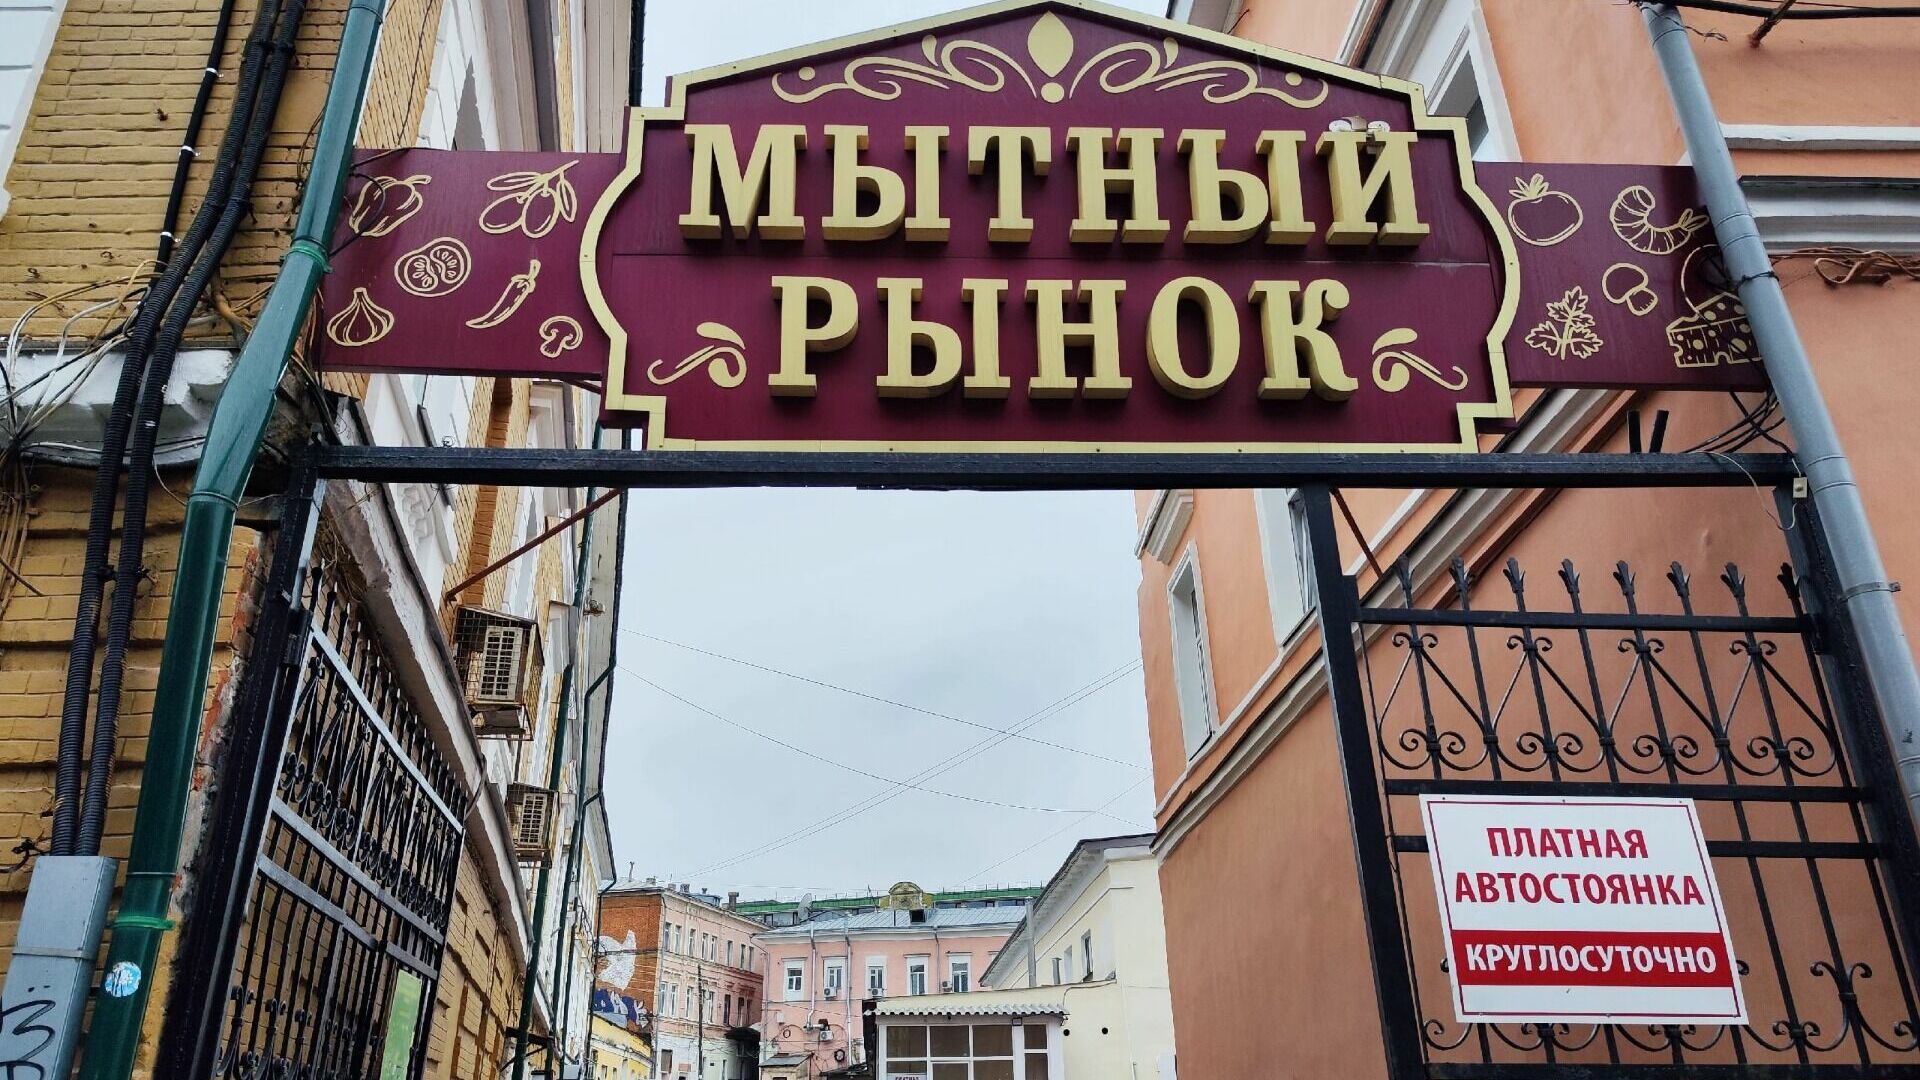 Мытный рынок в Нижнем Новгороде хотят открыть перед майскими праздниками